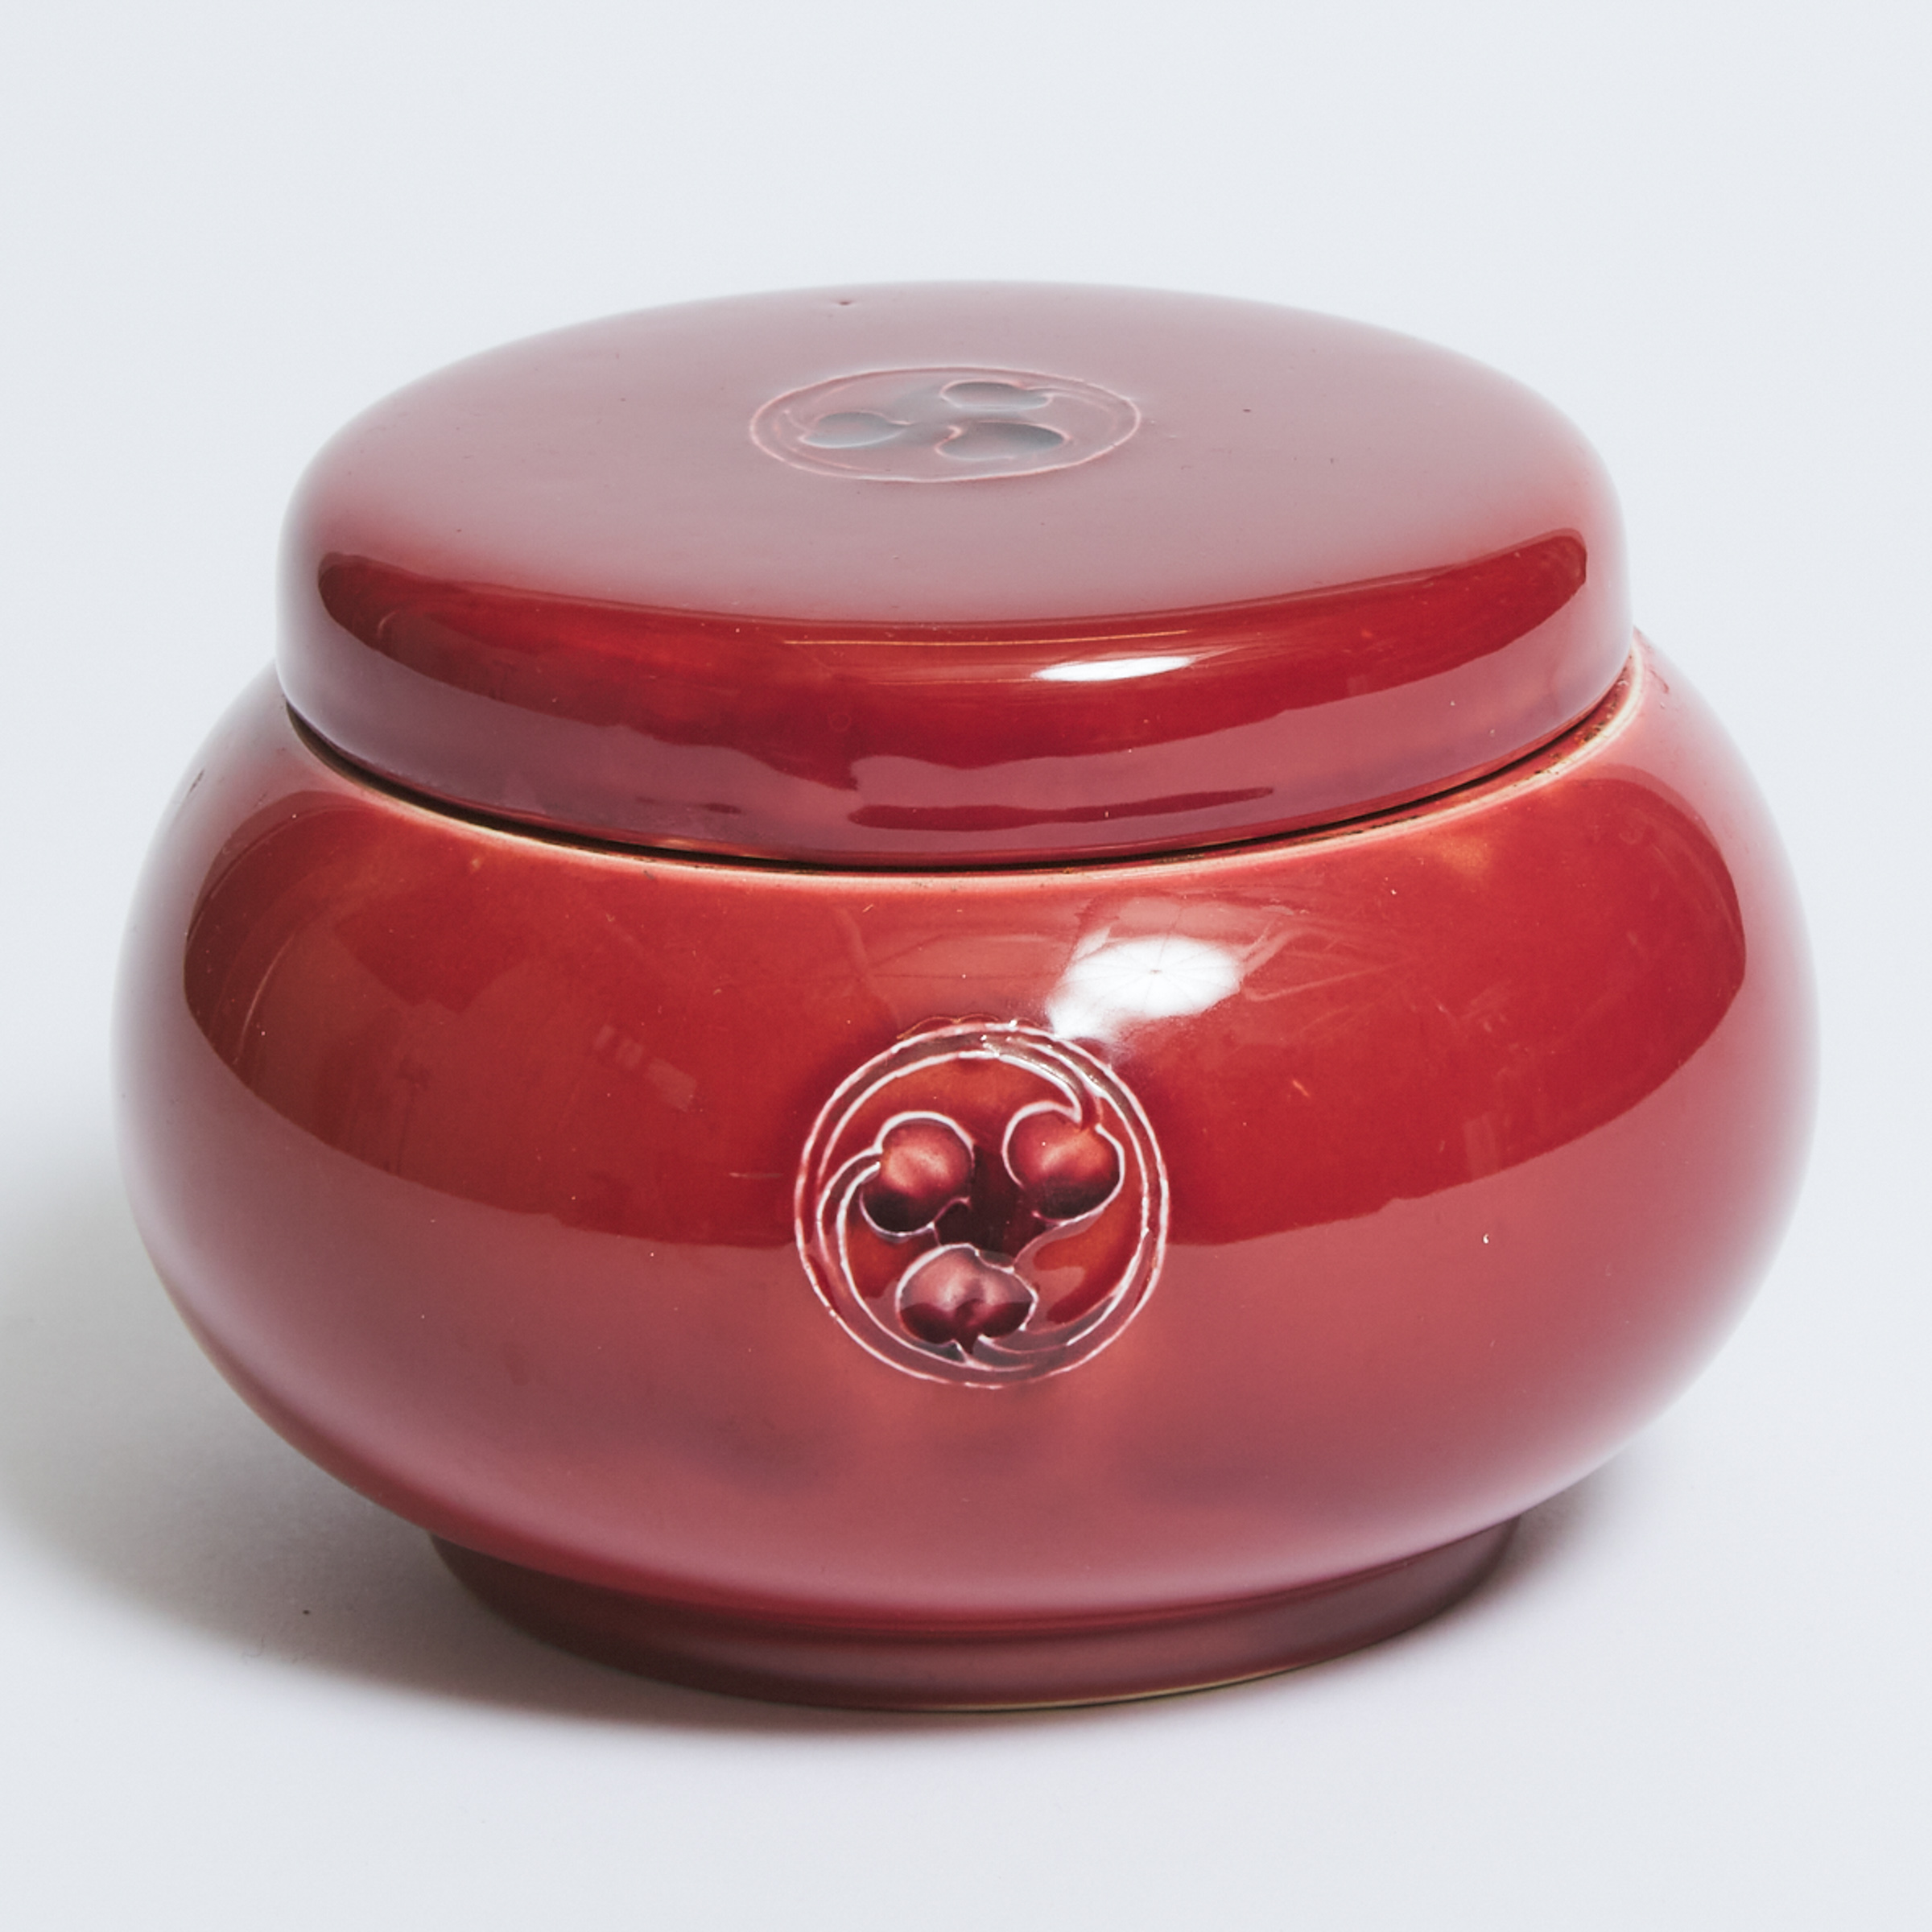 Macintyre Moorcroft Red Flamminian Tobacco Jar, c.1906-13